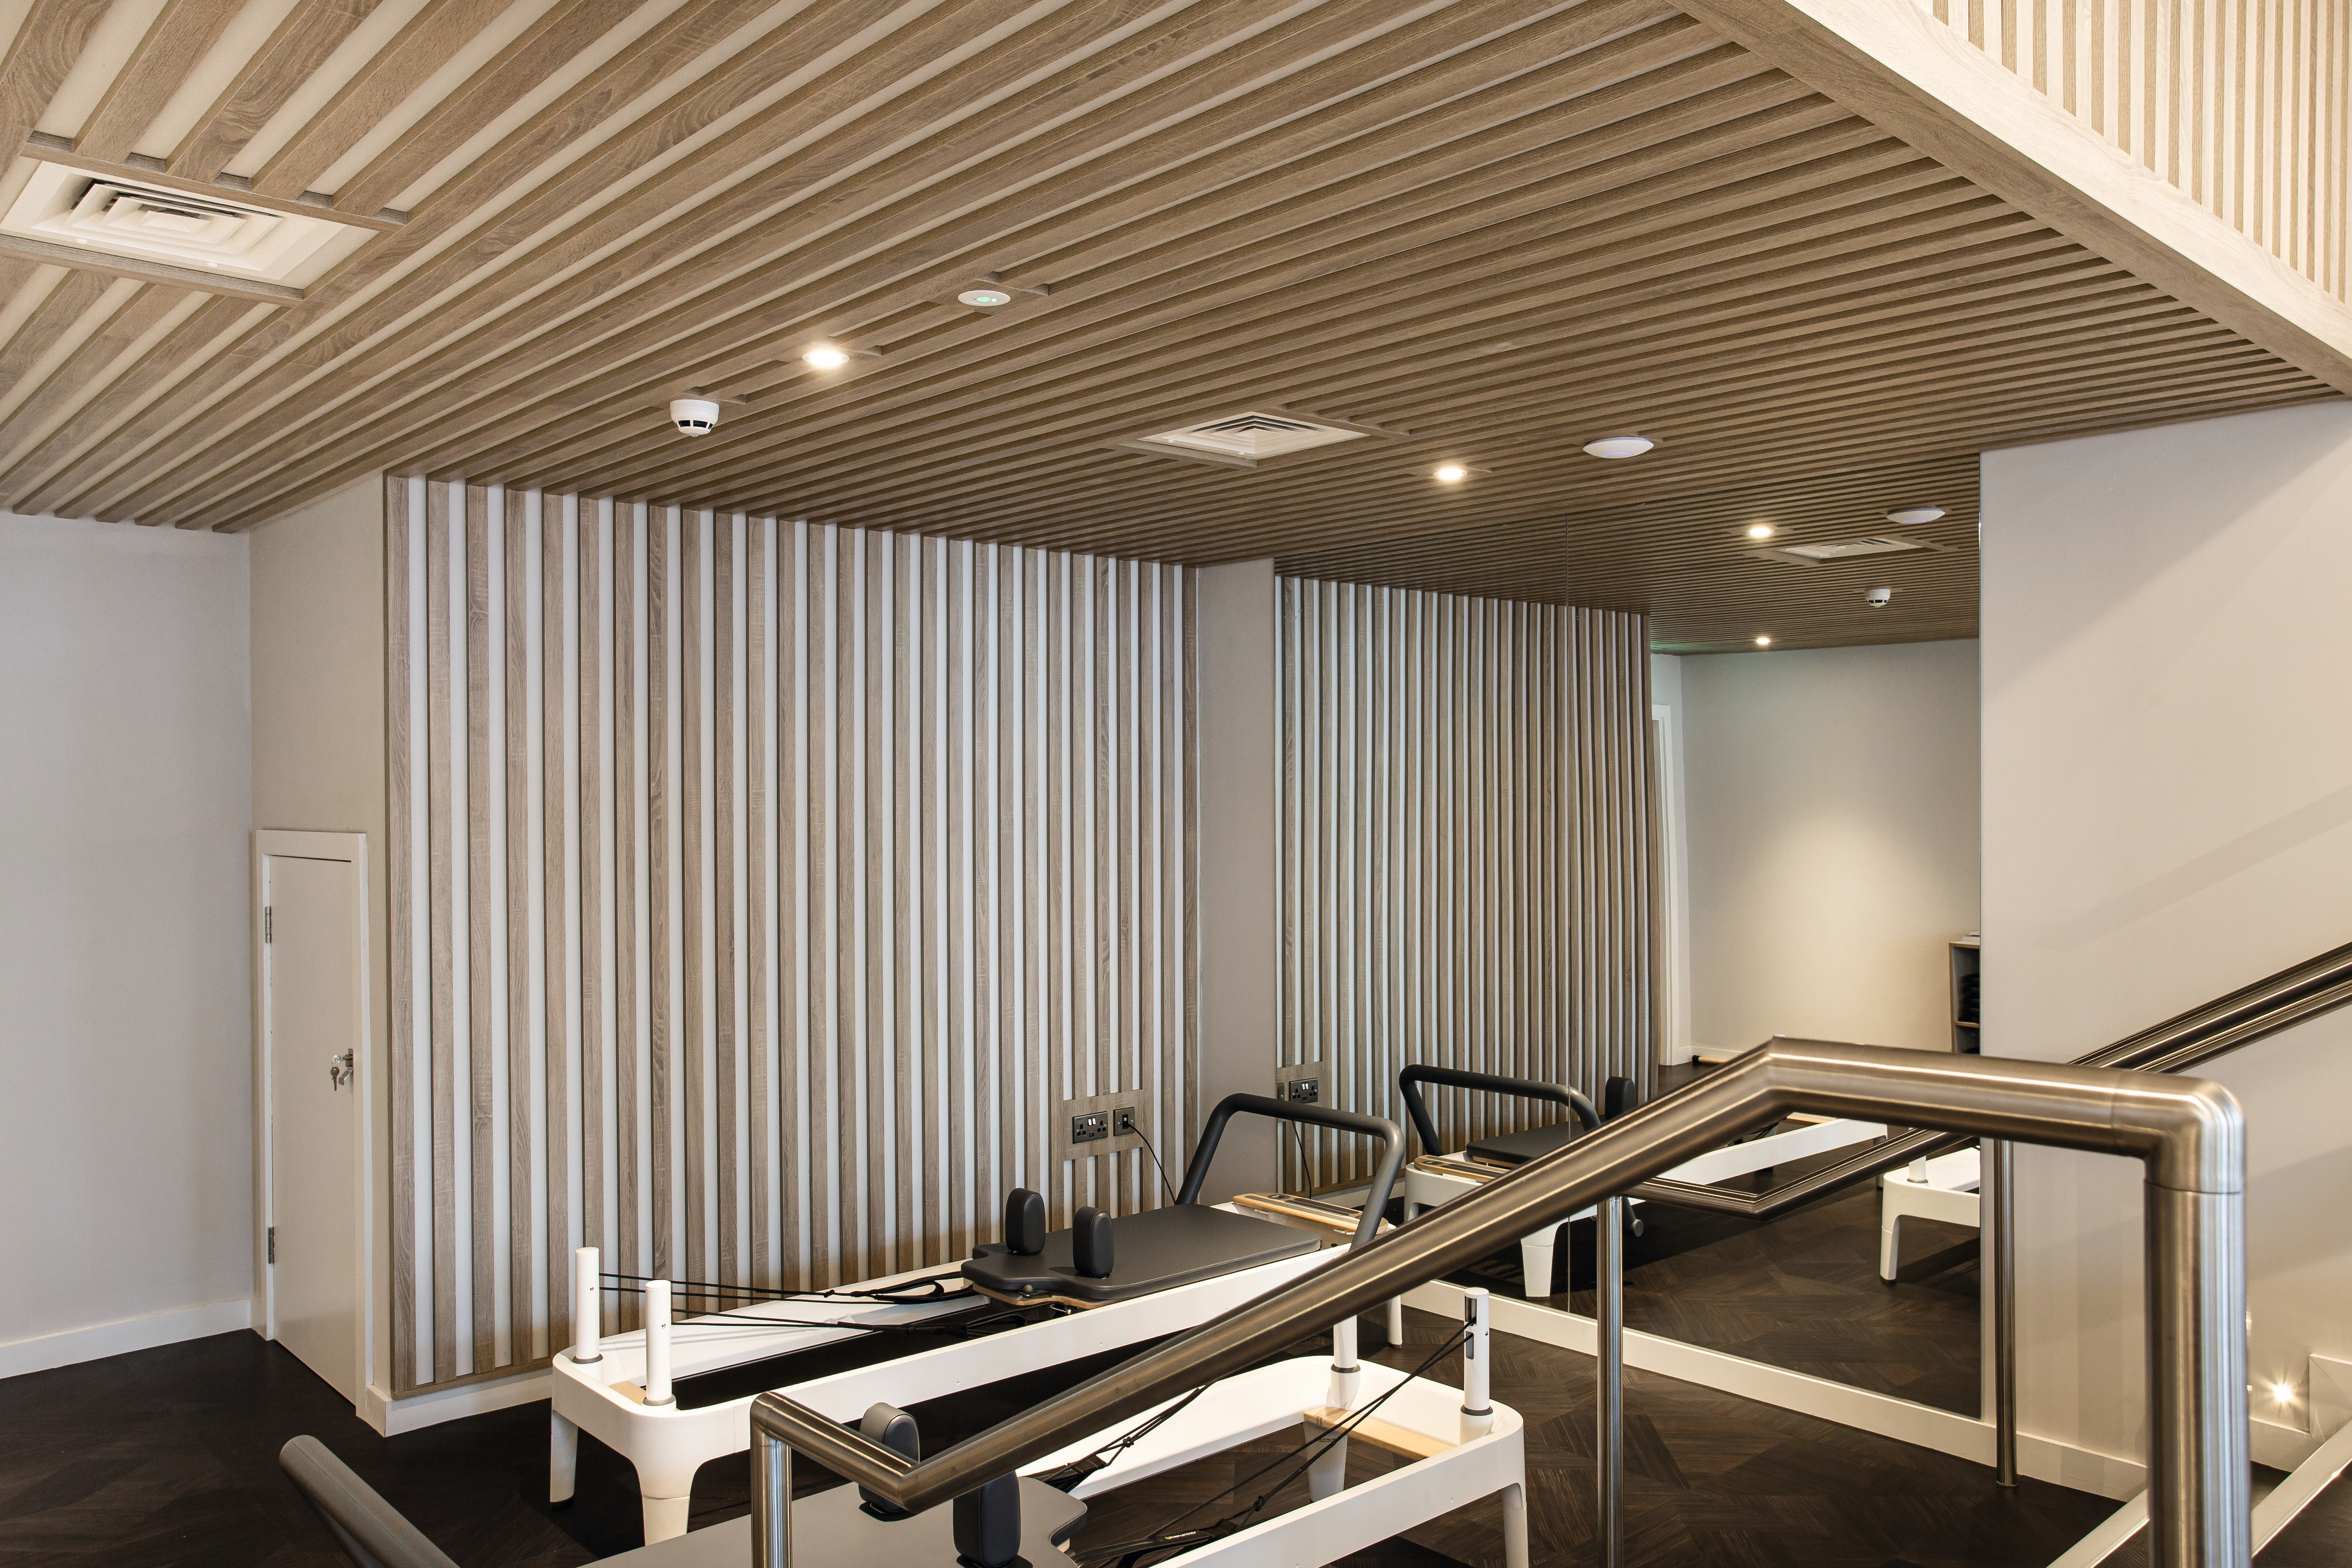 De nieuwe wellness-studio werd op alle drie de verdiepingen voorzien van decoratieve panelen, laminaat en kantenband in hetzelfde decor.